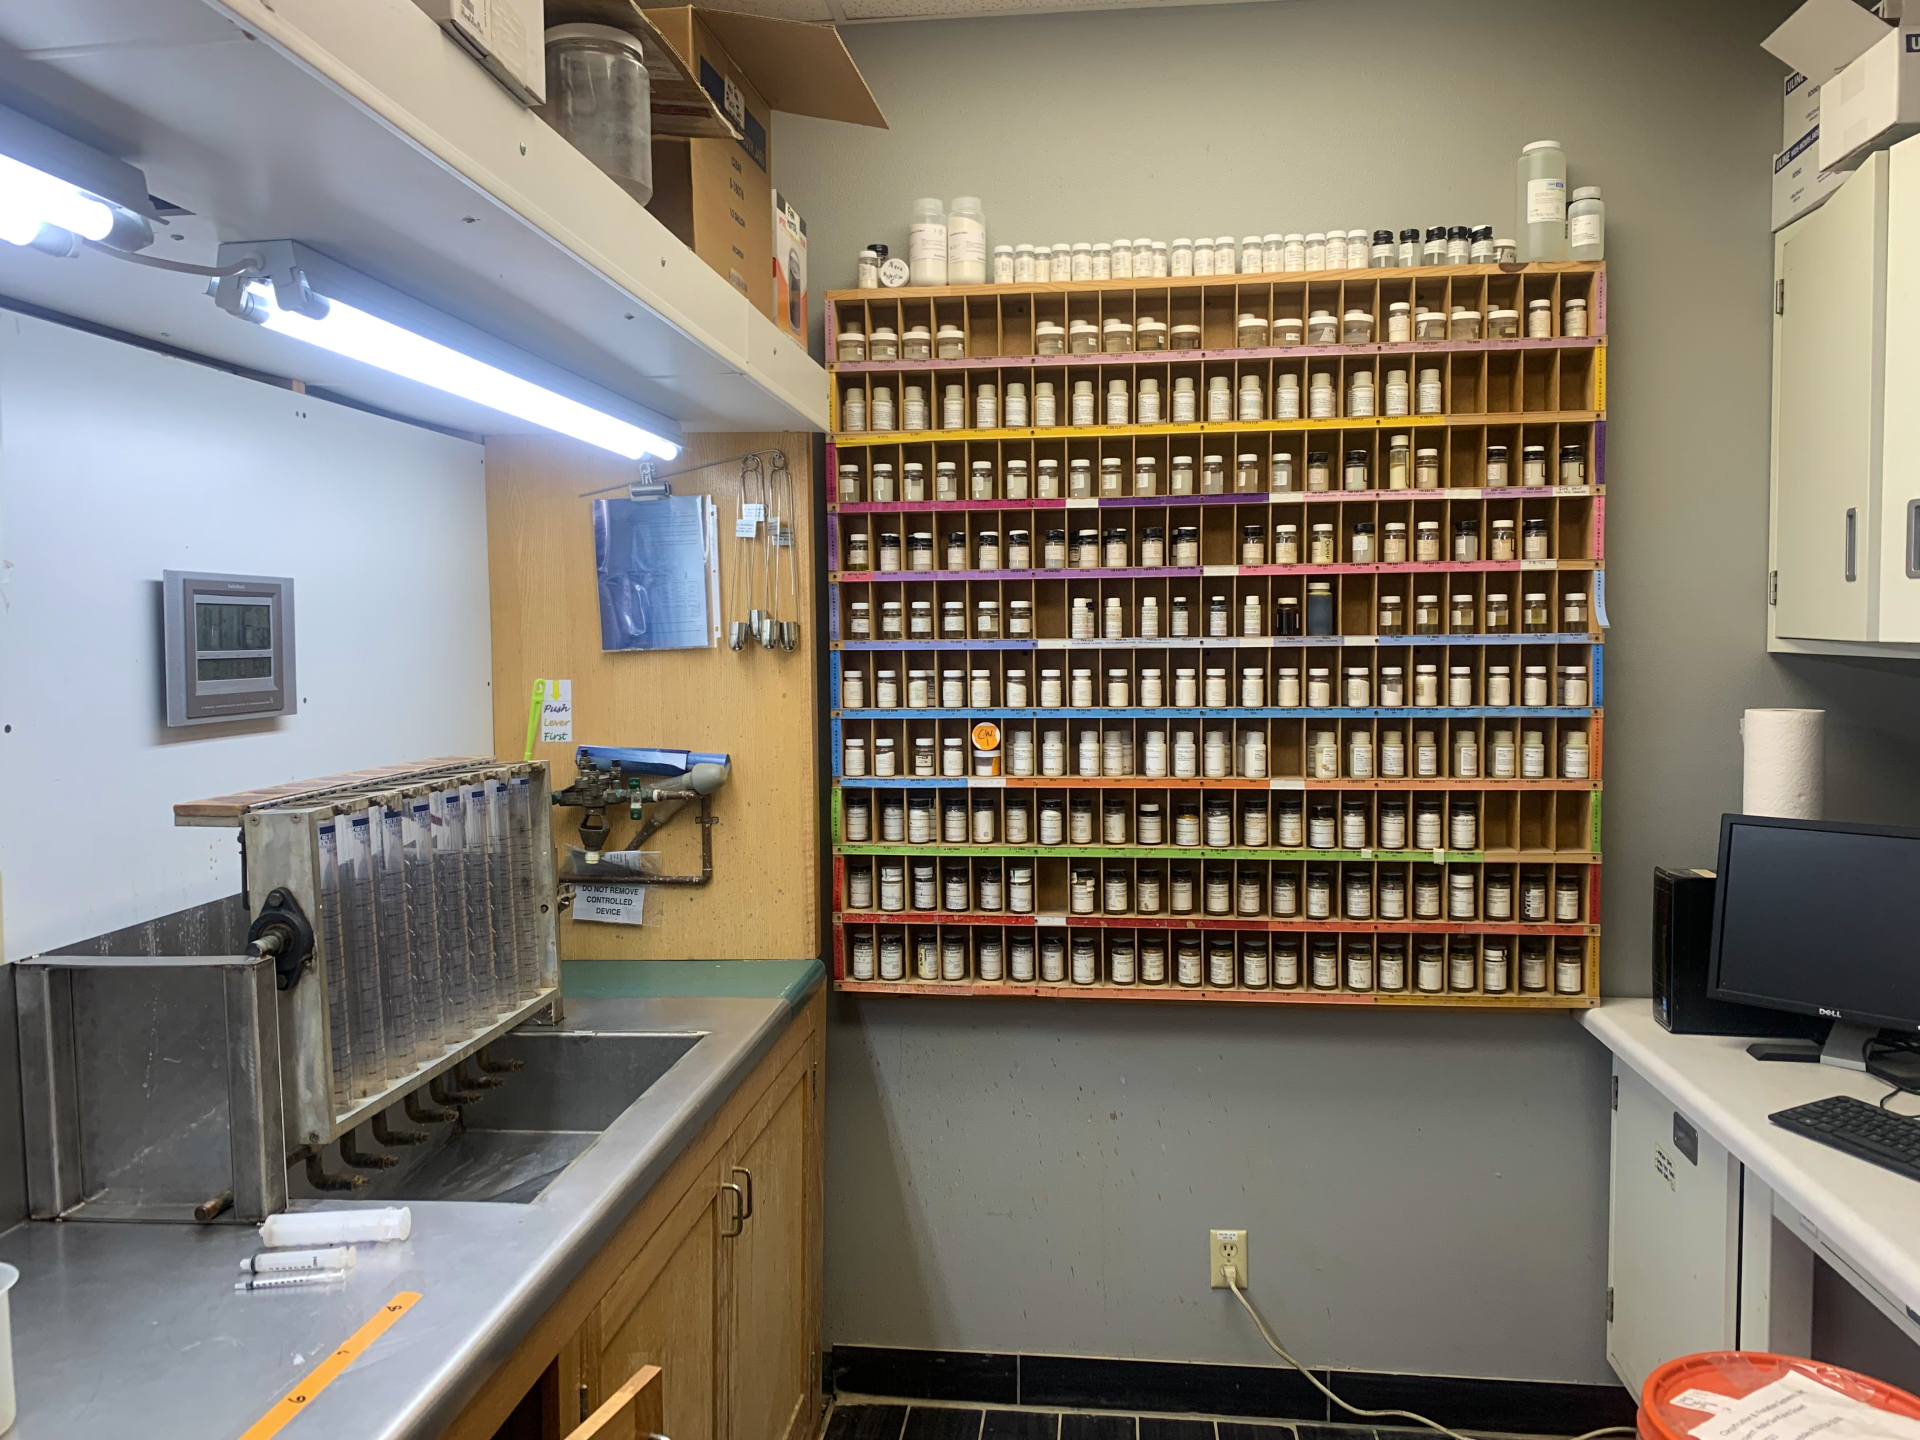 Una habitación pequeña con vasos de precipitados sobre el fregadero de la izquierda y una pared de diferentes productos químicos en el fondo.